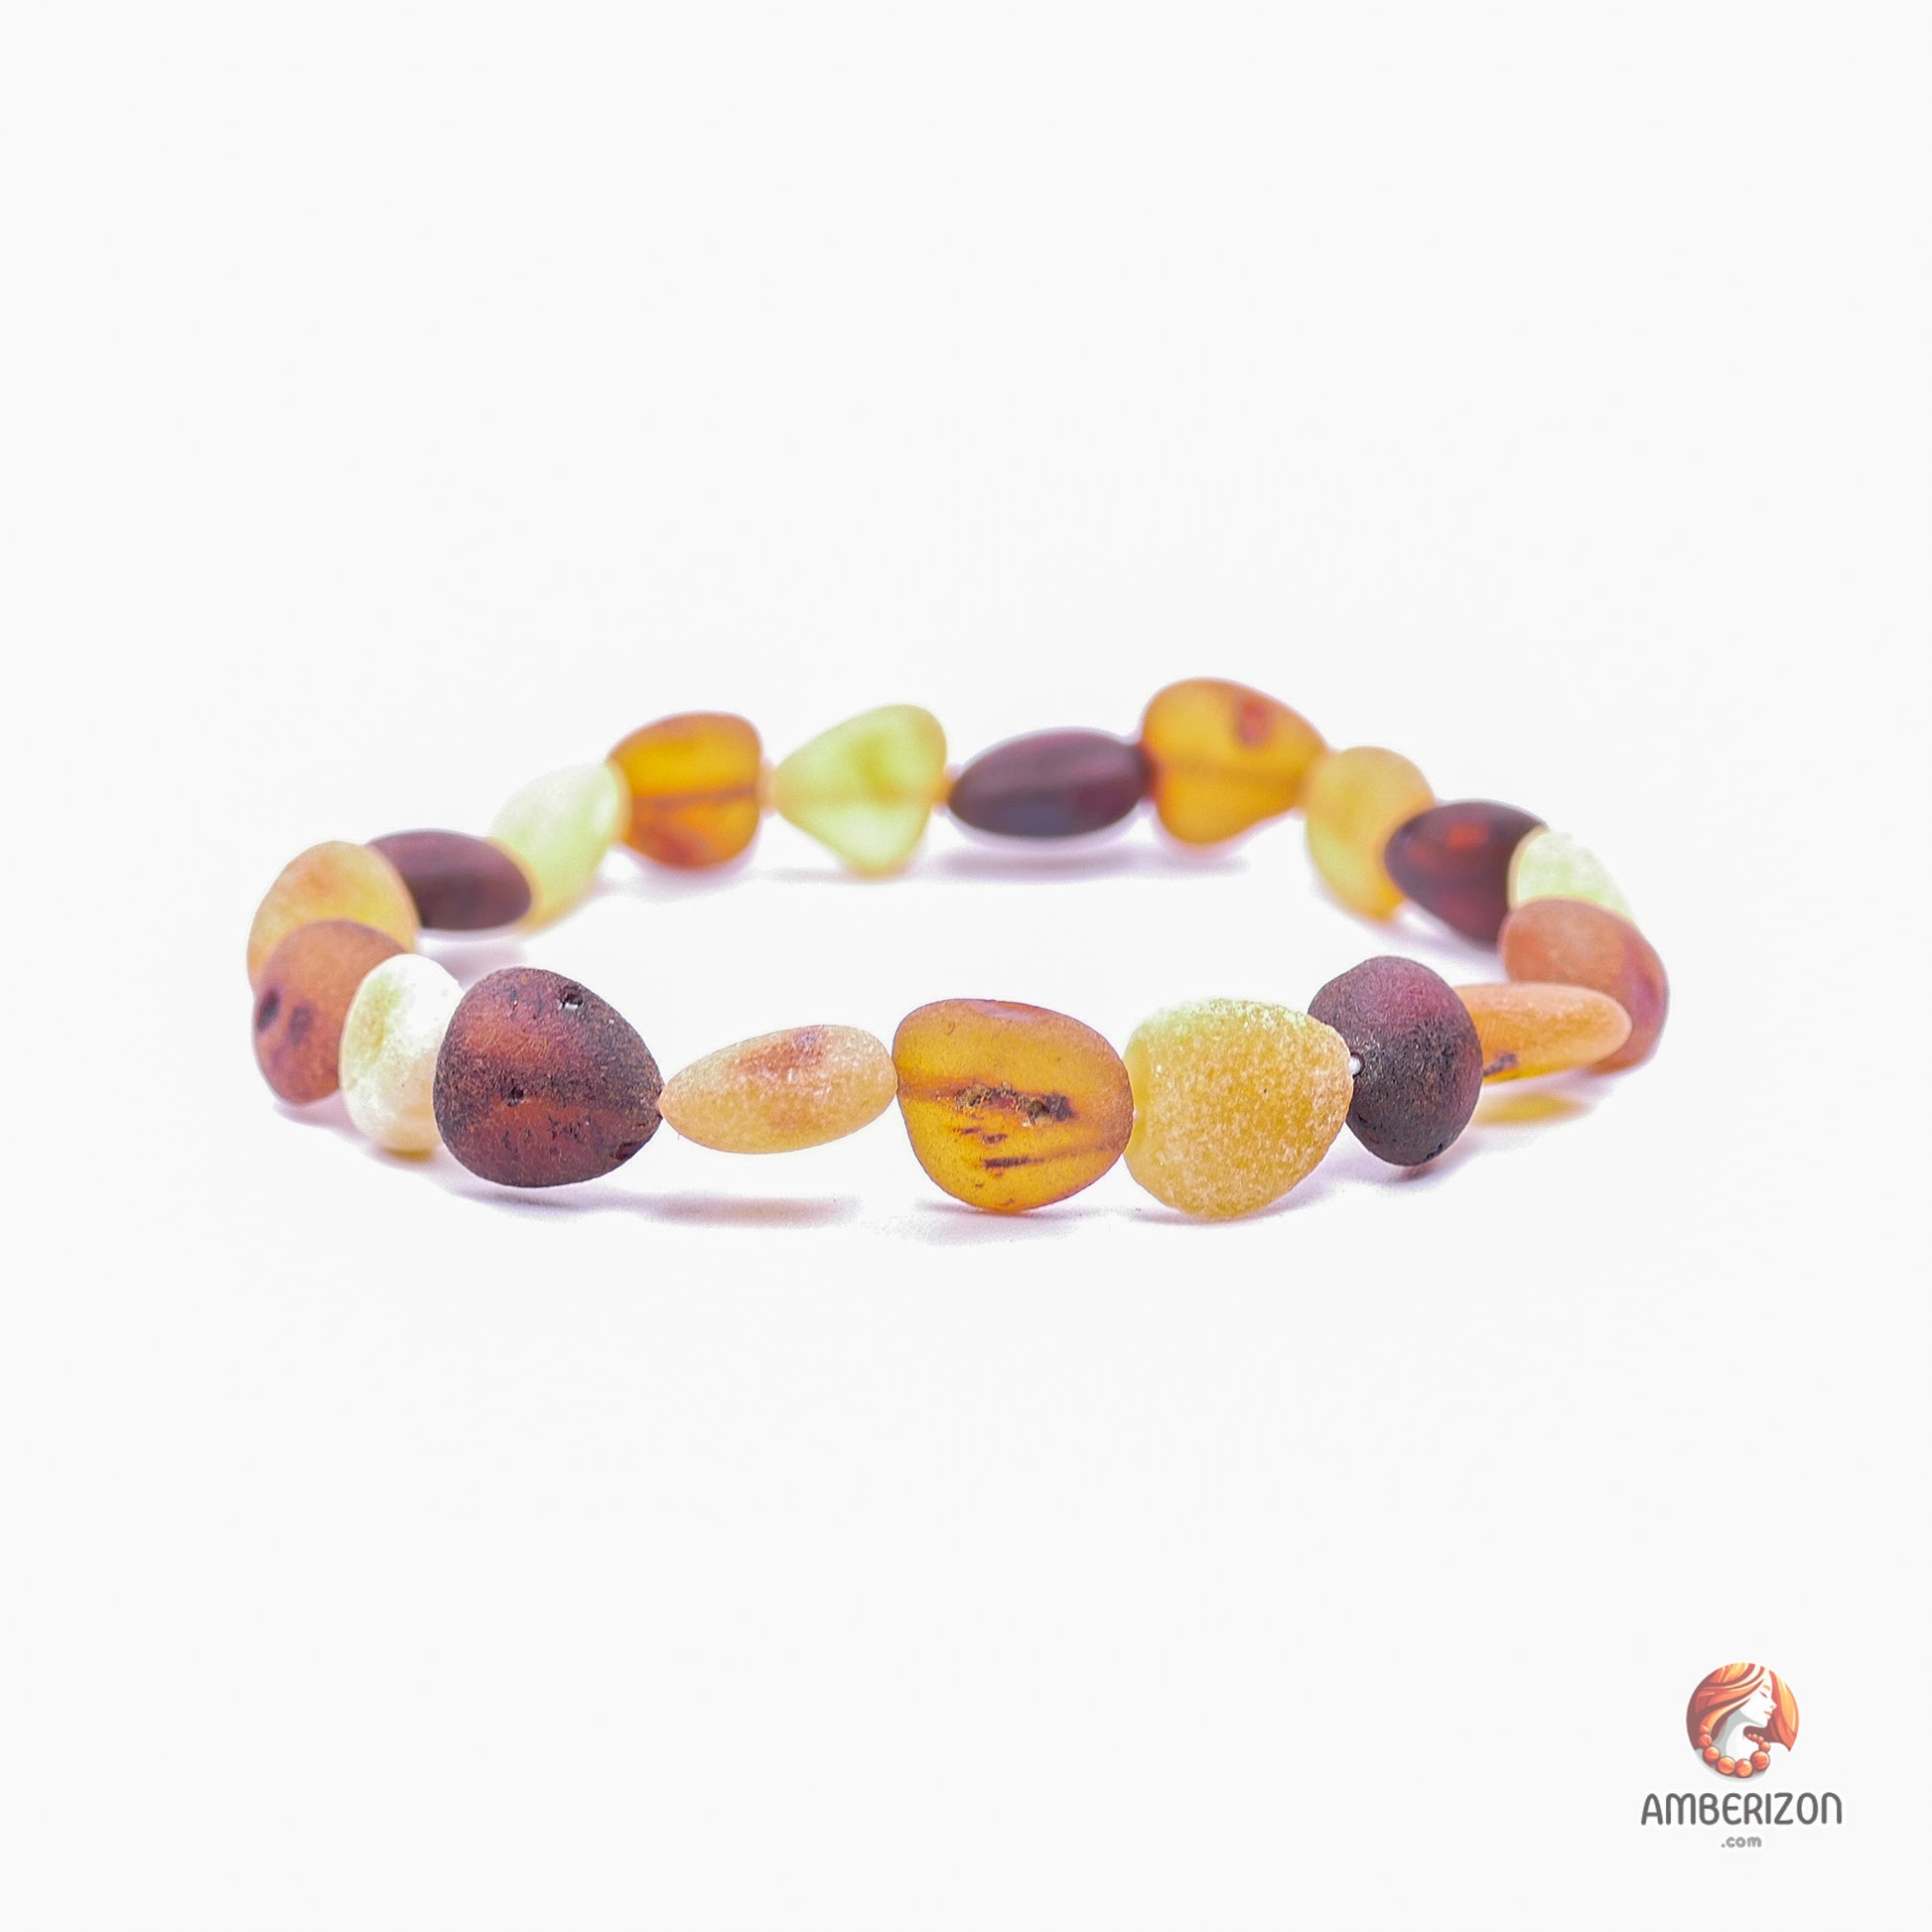 Unpolished raw amber stone bracelet - Freeform  stone organic beads - Stretchy